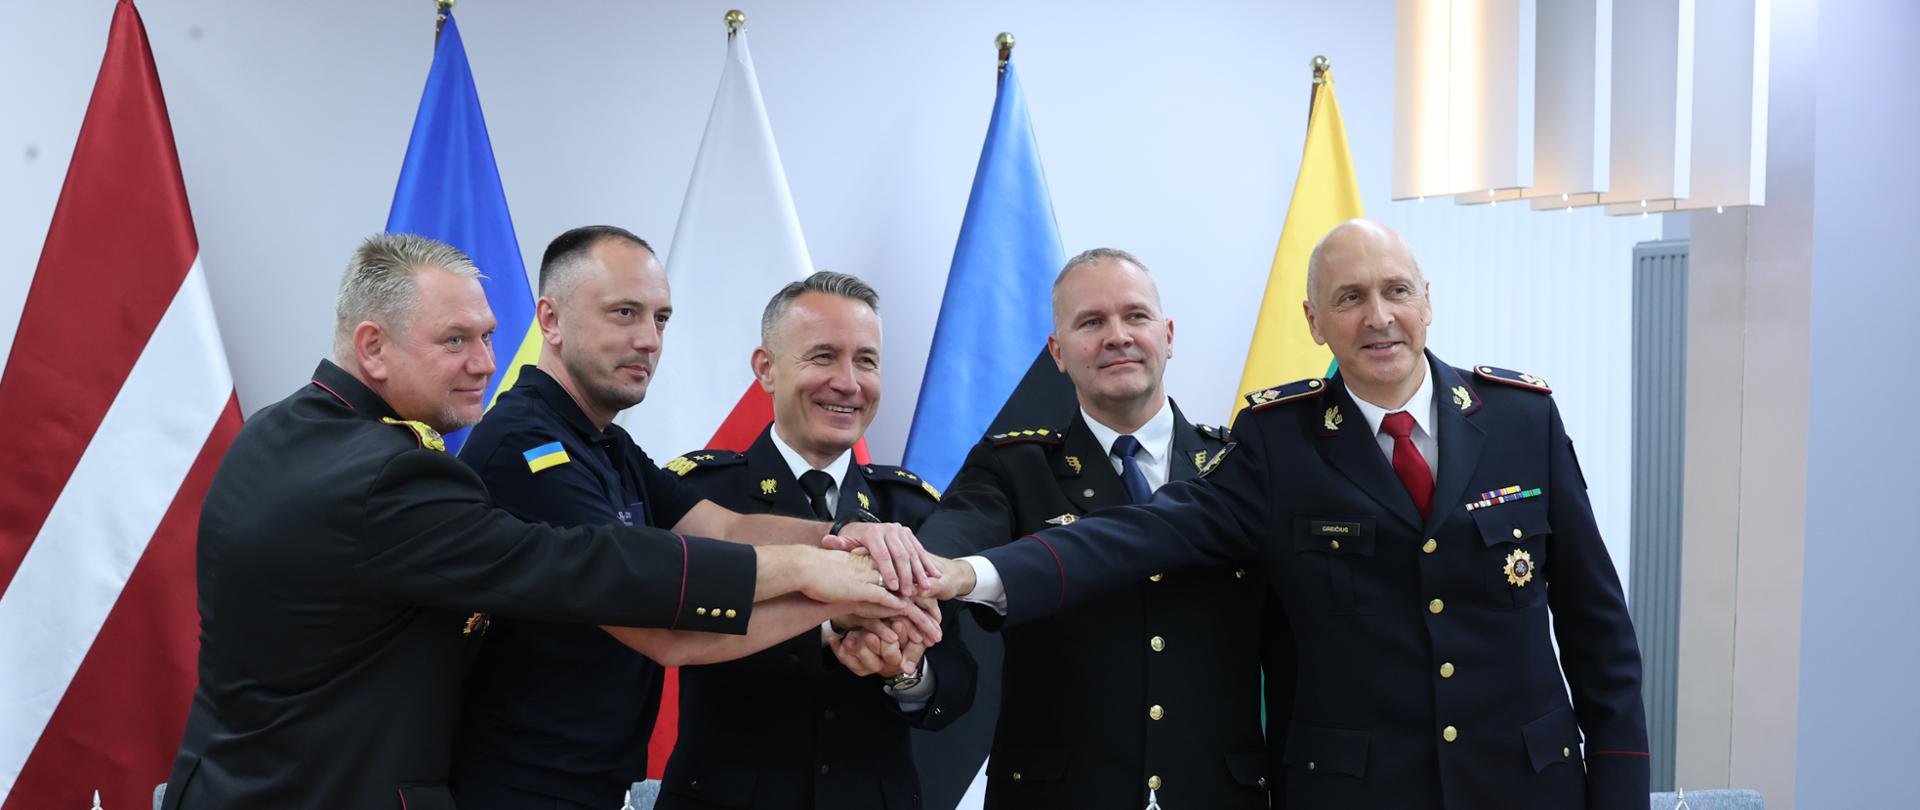 Na zdjęciu widać Szefów Służb Ratowniczych Ukrainy, Litwy, Łotwy, Estonii i komendanta głównego PSP którzy nakładają na siebie swoje dłonie wyrażając jedność. W tle flagi.